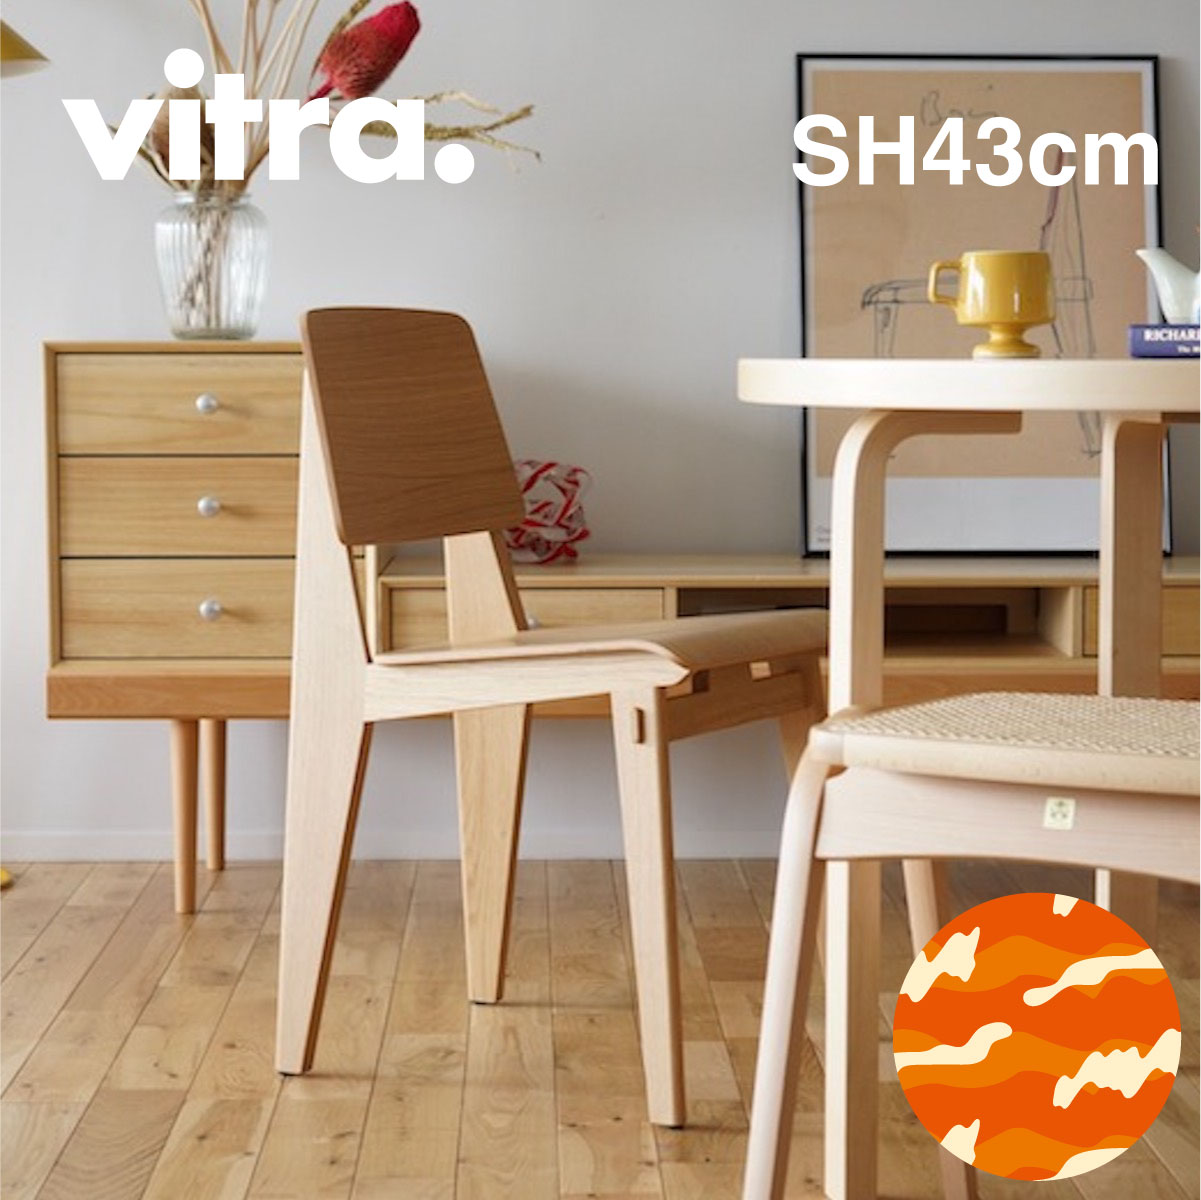 Vitra（ヴィトラ） シェーズトゥボワジャパンハイト（Chaise Tout Bois SH43cm）